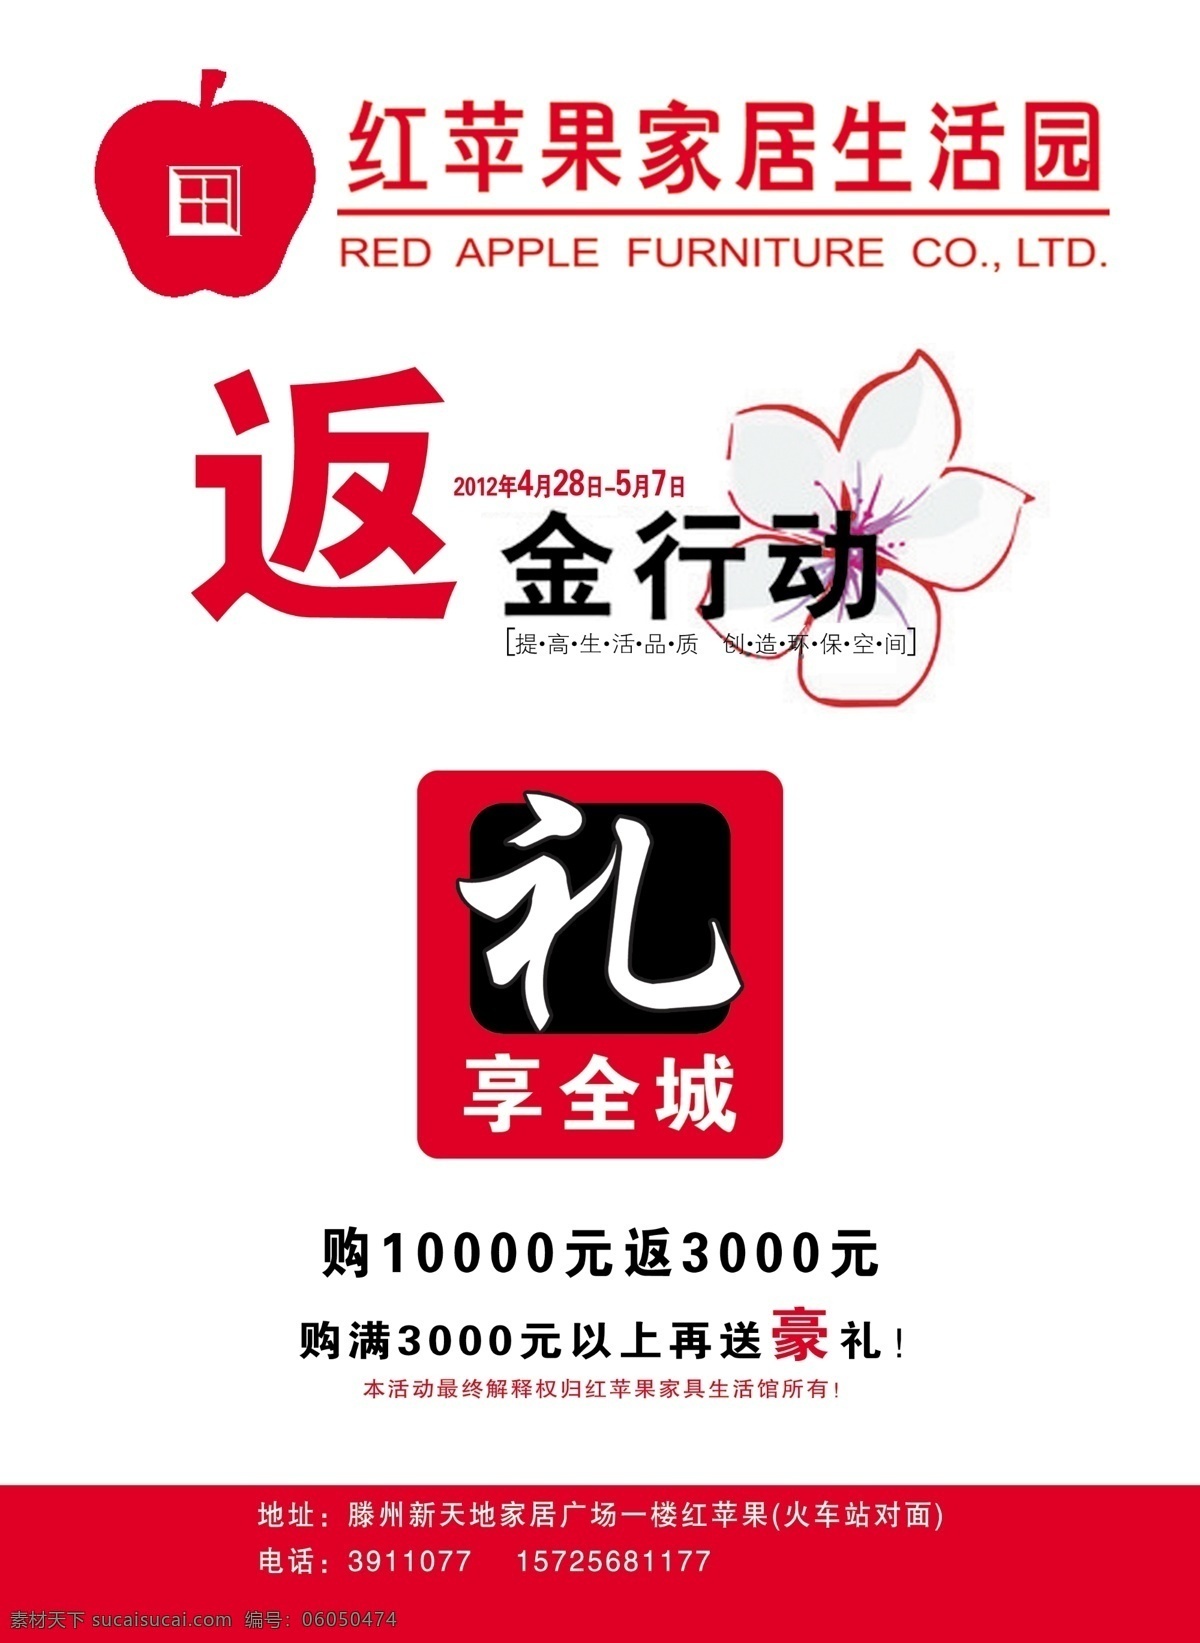 红苹果 家居生活园 家居生活 返金行动 礼 生活品质 广告设计模板 源文件